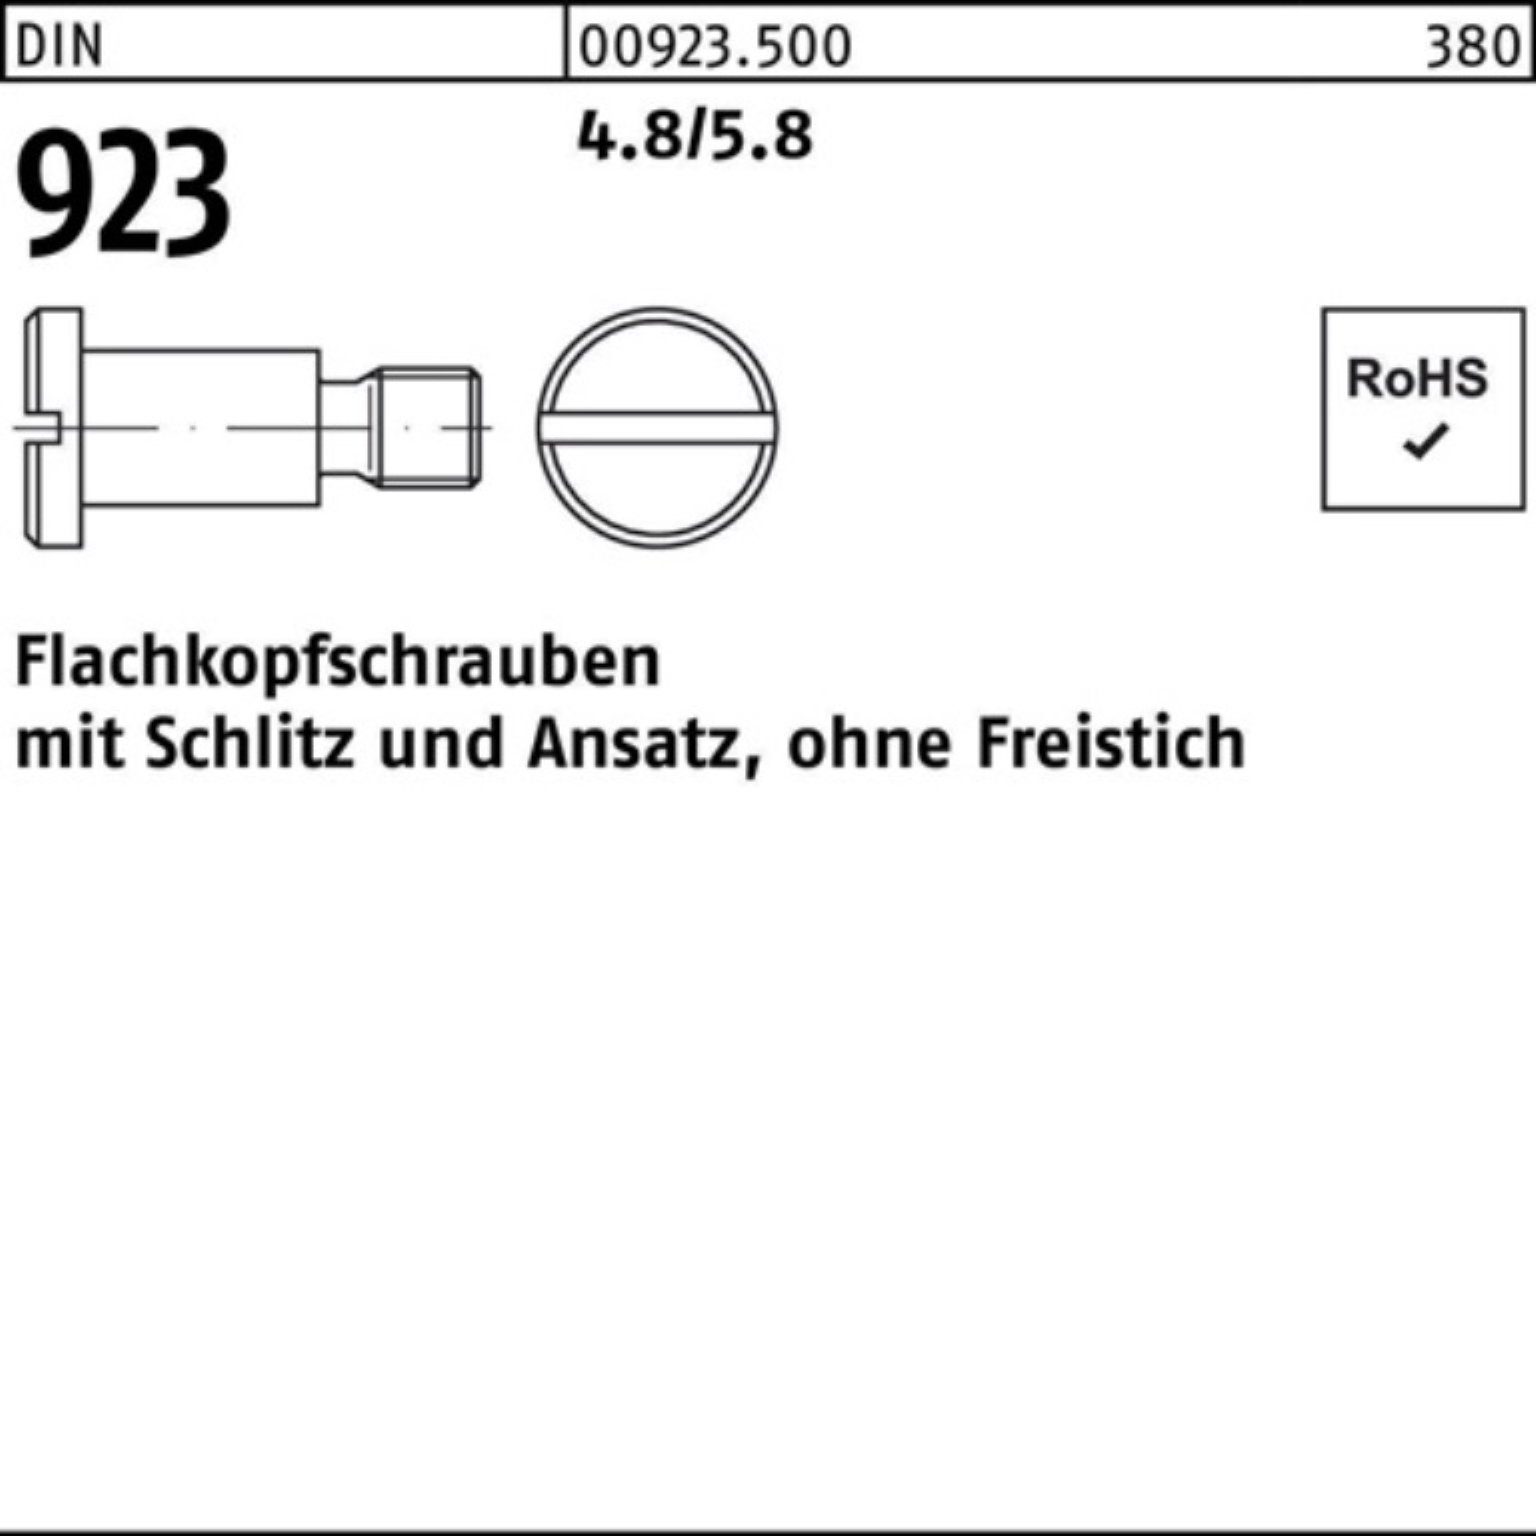 Reyher Schraube 100er Pack Flachkopfschraube DIN 923 Schlitz/Ansatz M4x10x 6,0 4.8/5.8